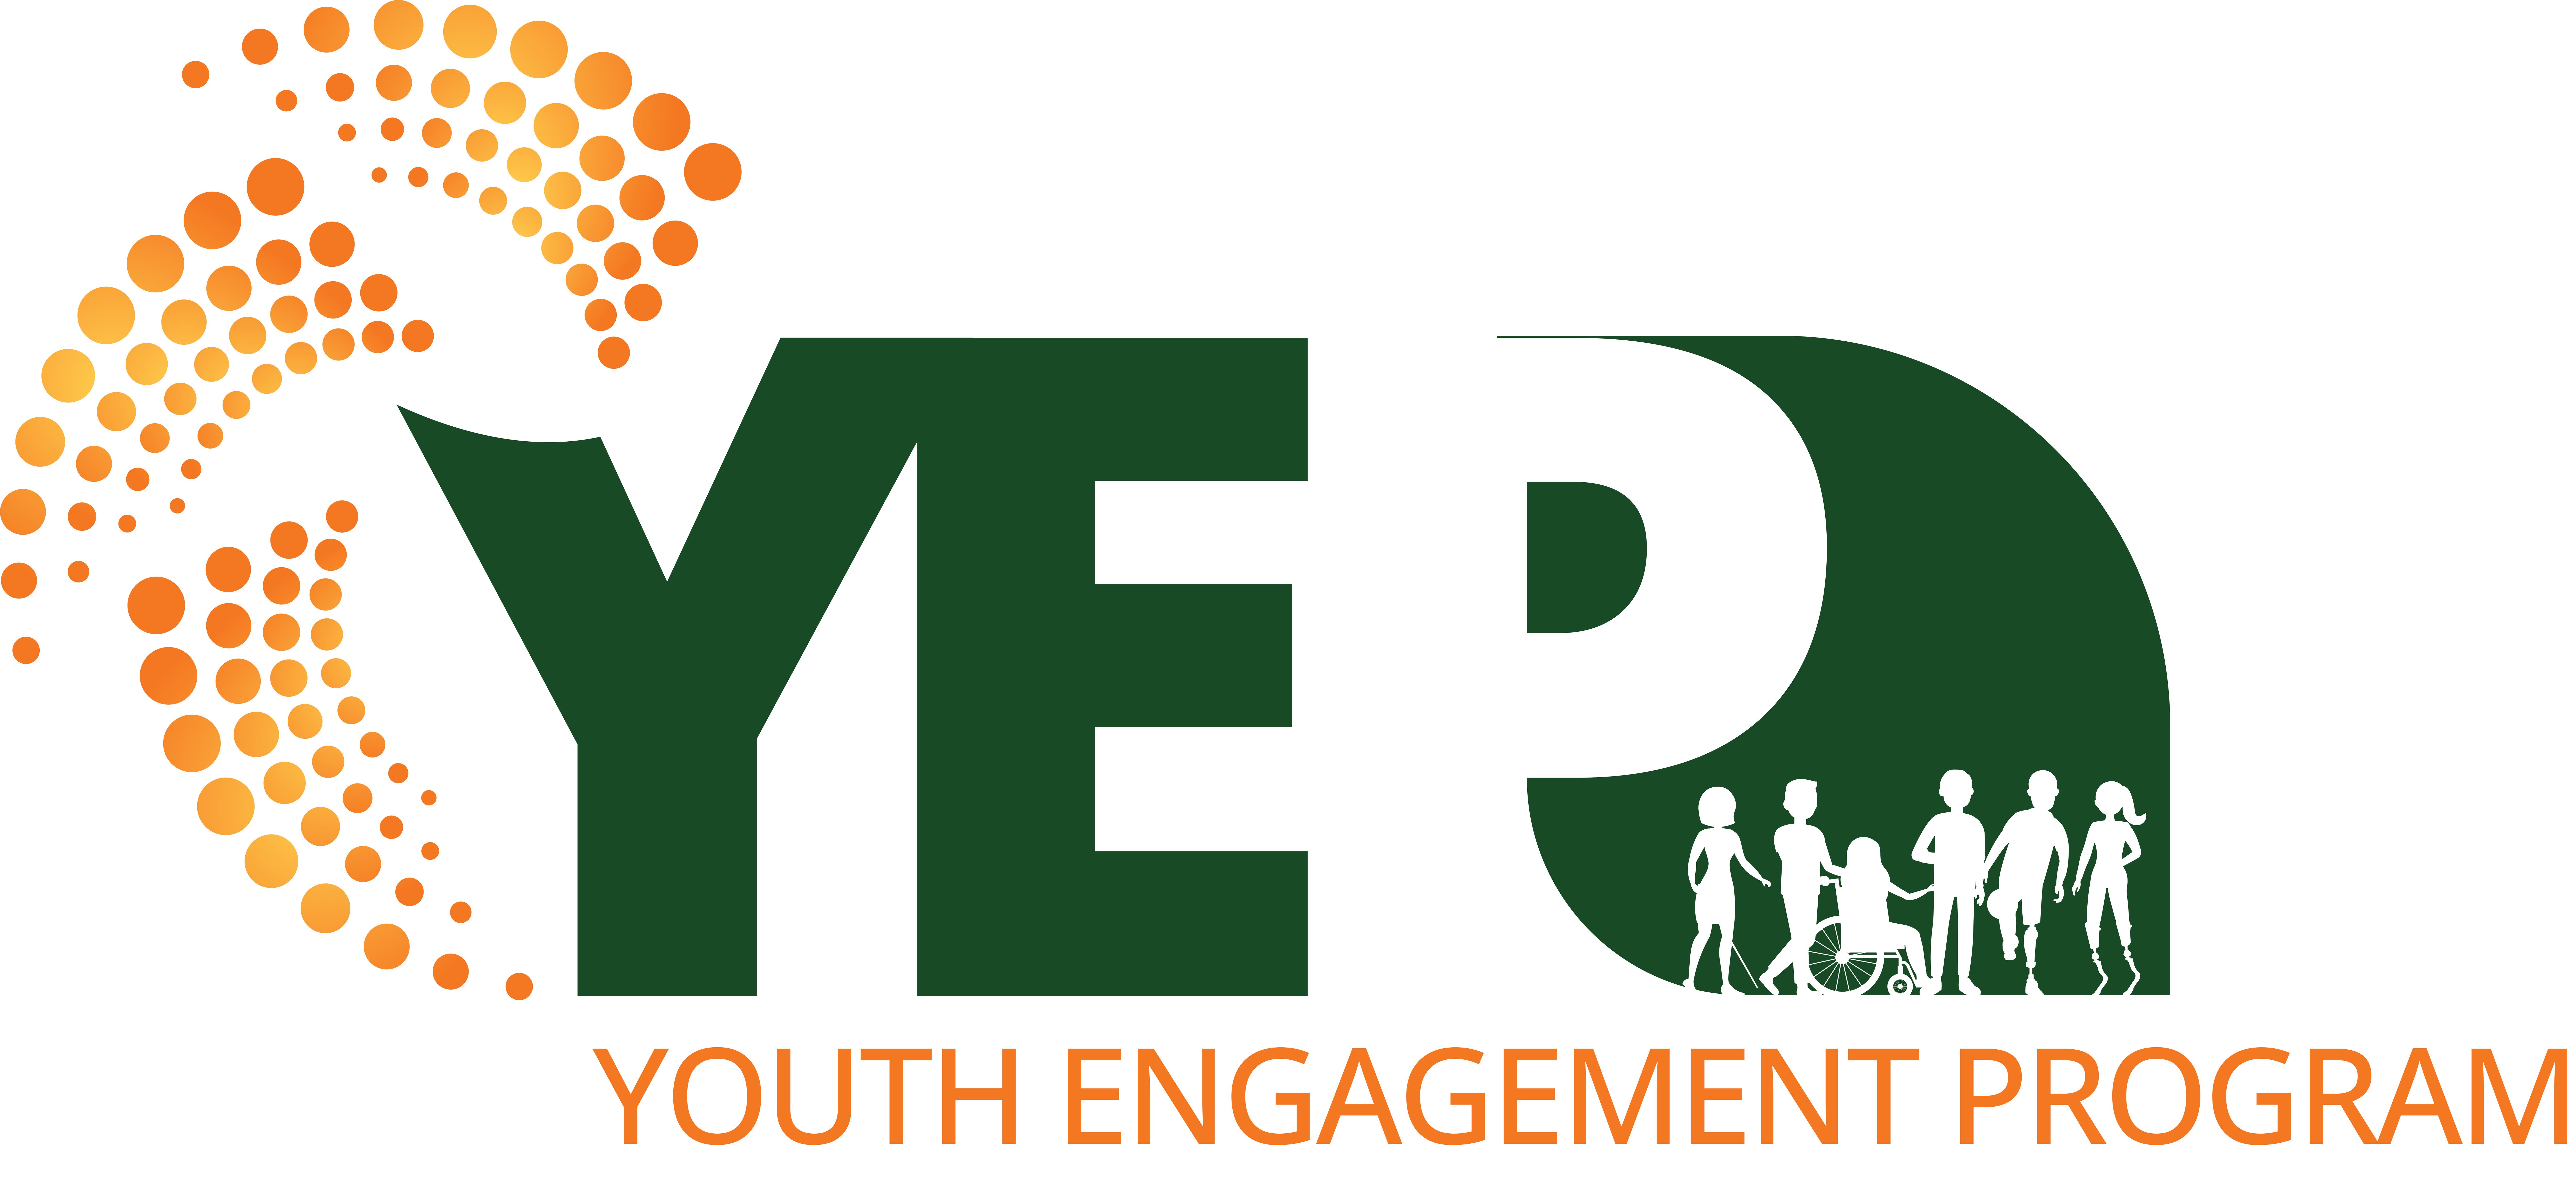 YEP - Youth Engagement Program logo